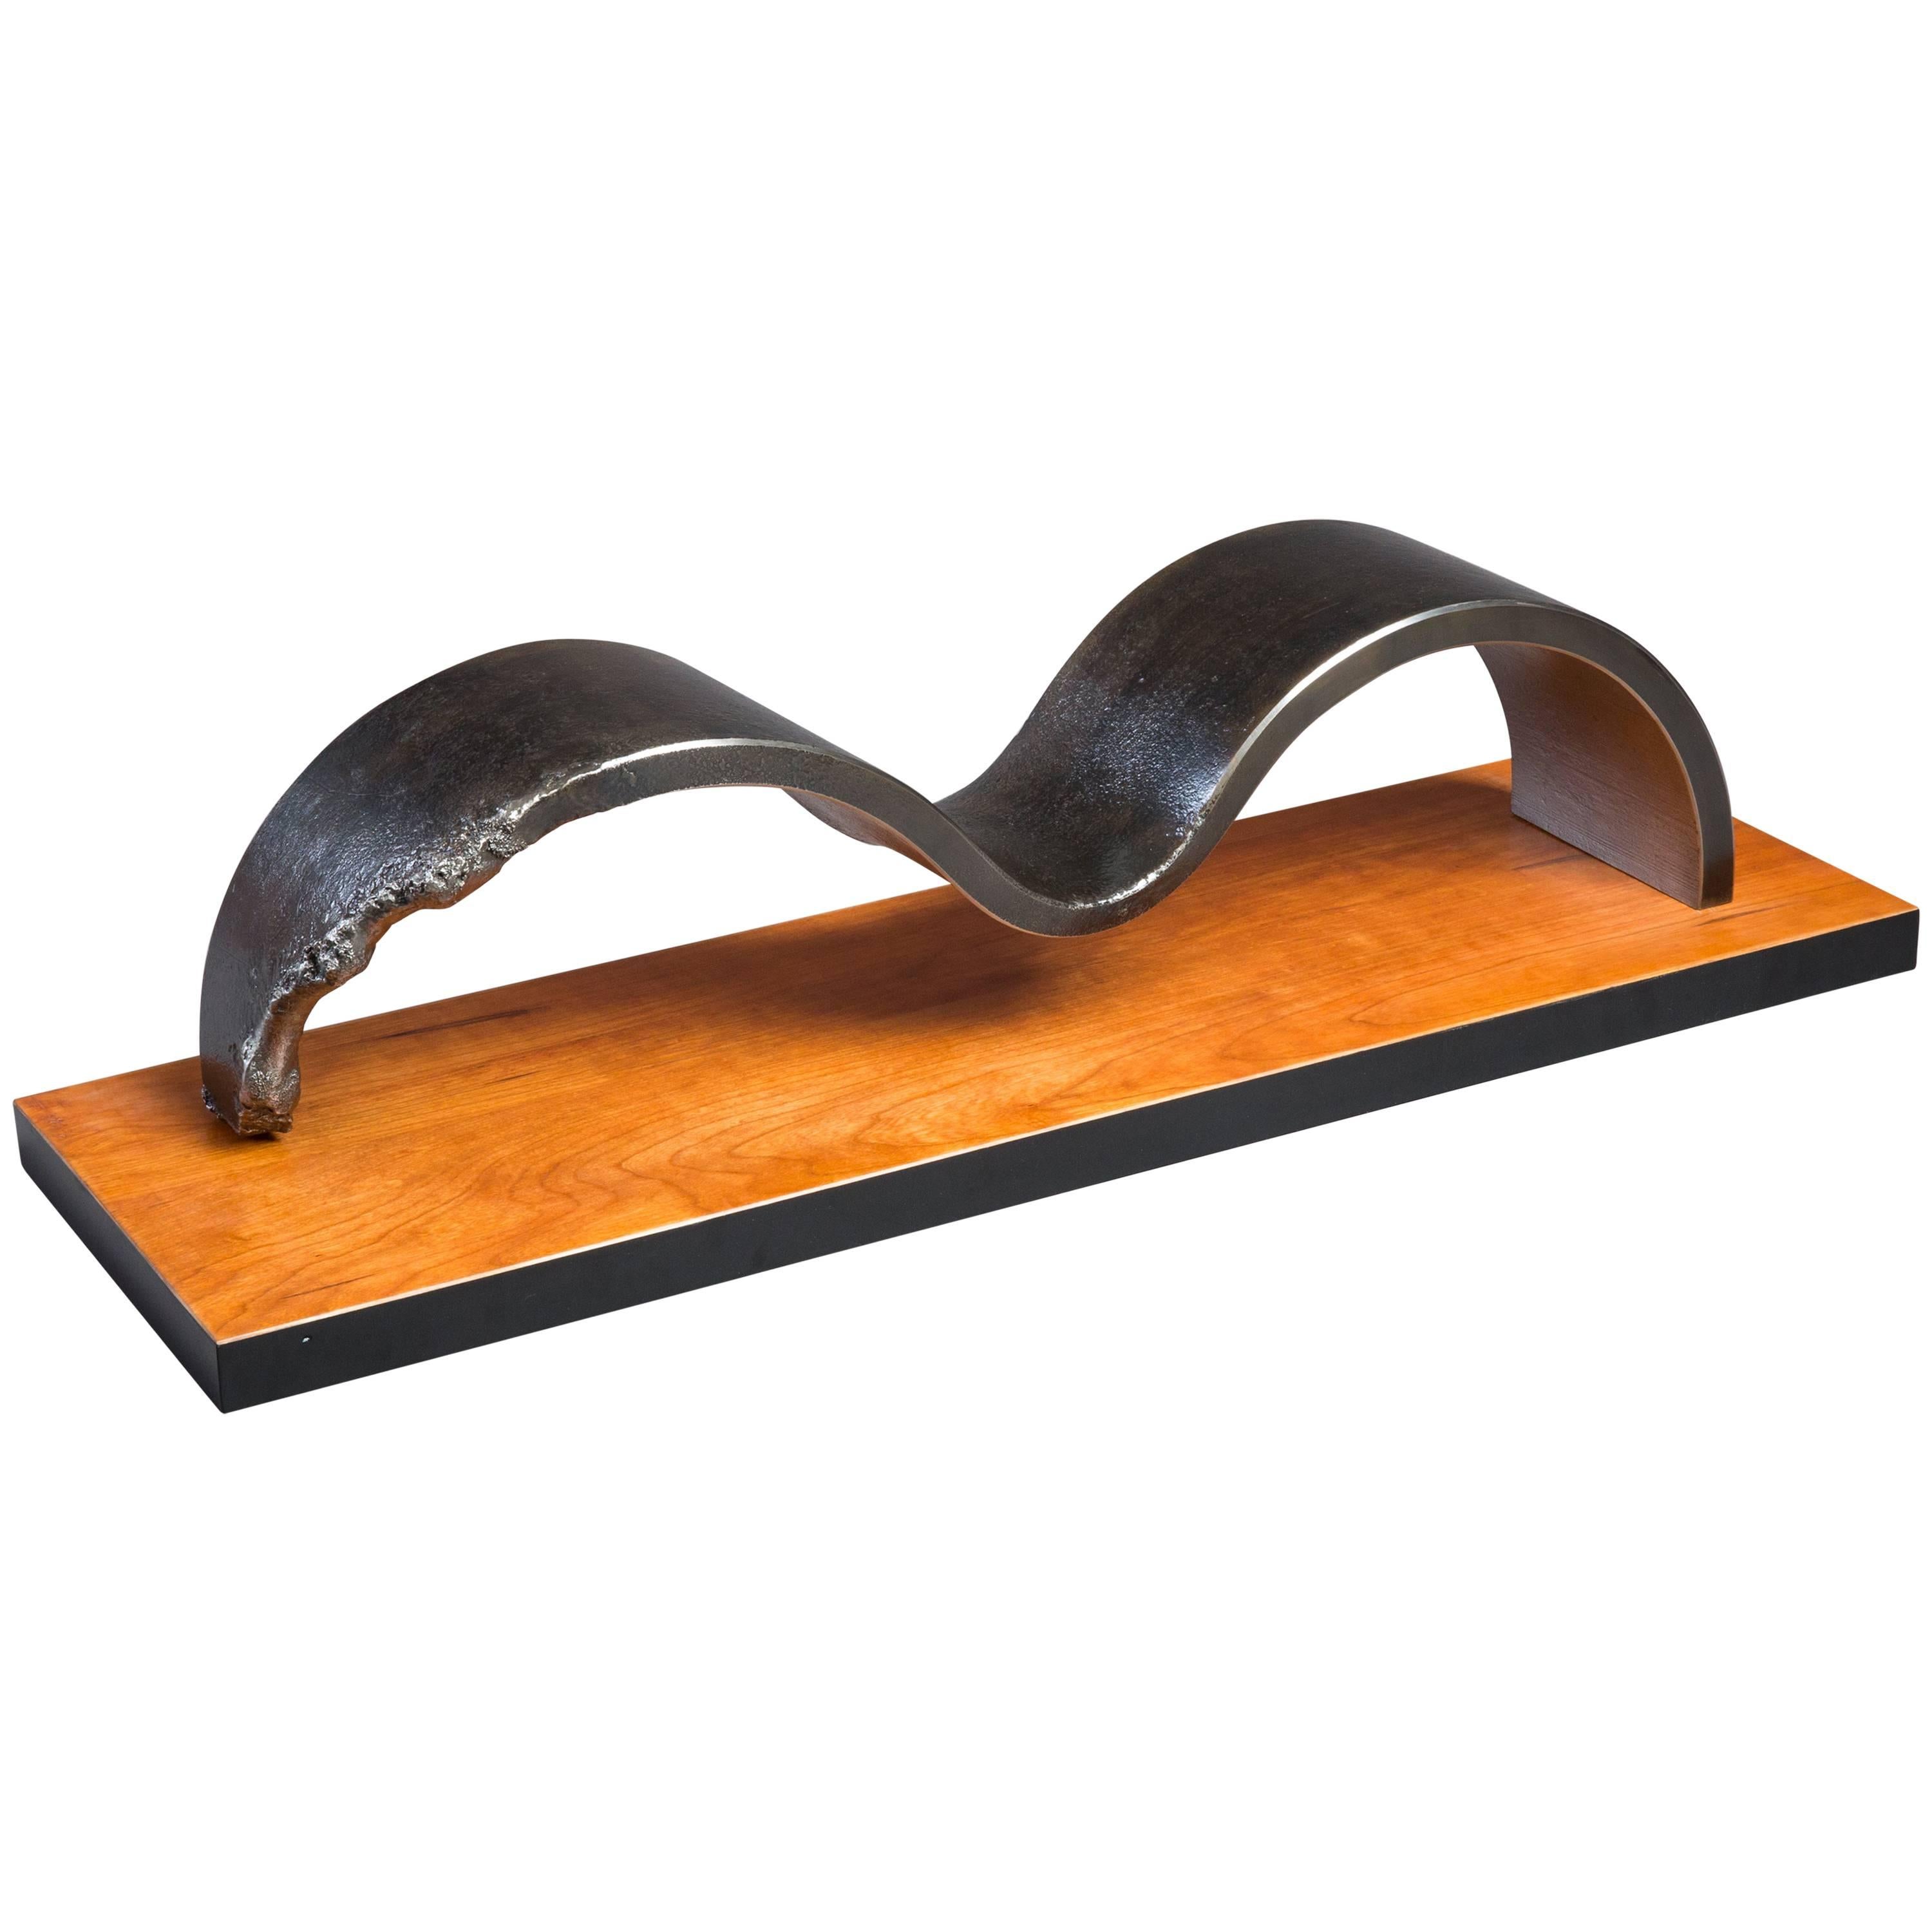 Sculpture de table unique en acier et bois avec patine forgée à la main, unique en son genre en vente